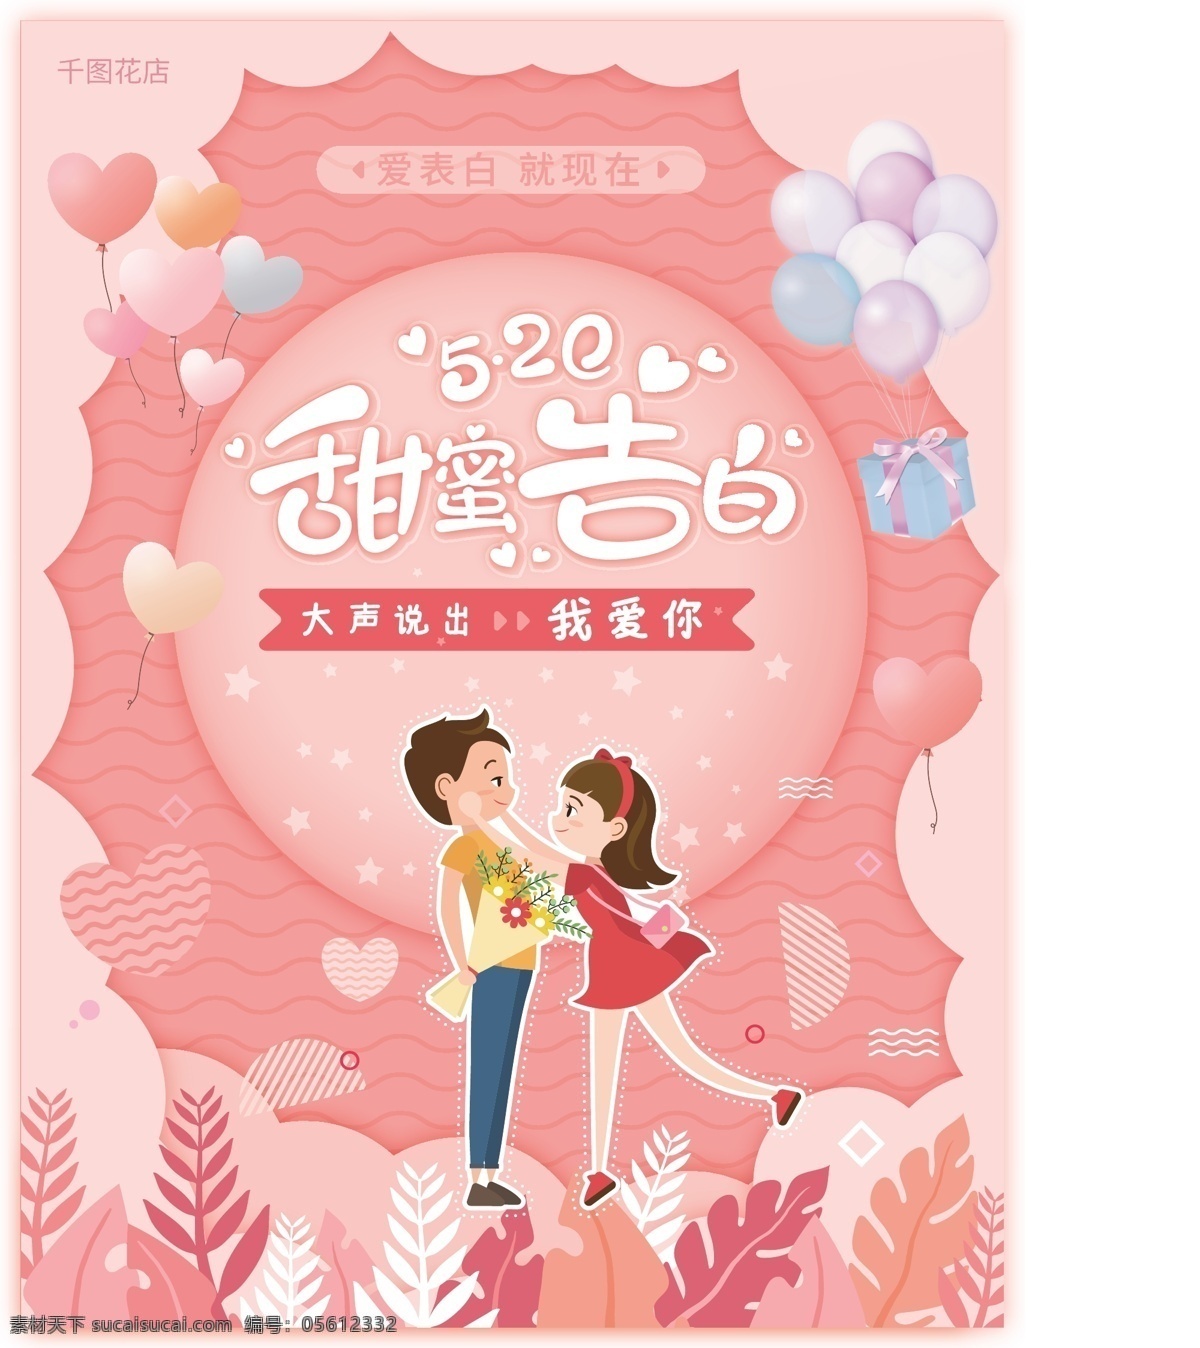 520 甜蜜 告白 海报 表白 粉色 节日海报 卡通 可爱 浪漫 气球 情侣 矢量 植物 情人节 amp 七夕 妇女节 分层